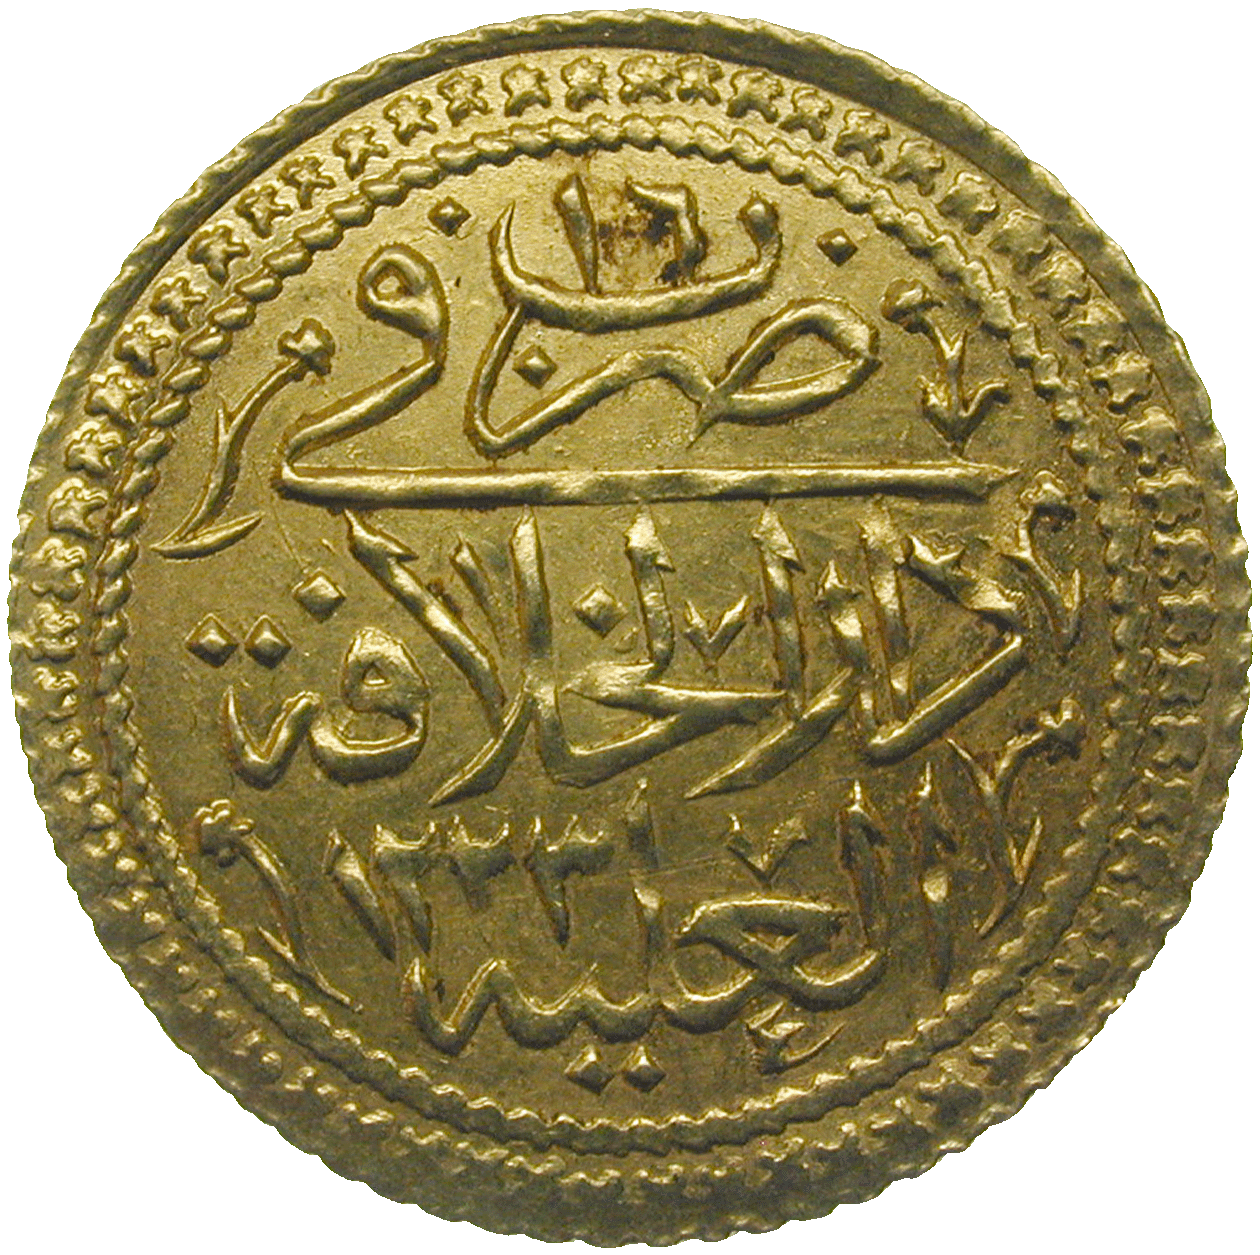 Osmanisches Reich, Mahmud II., Surre Altin Jahr 16 (reverse)